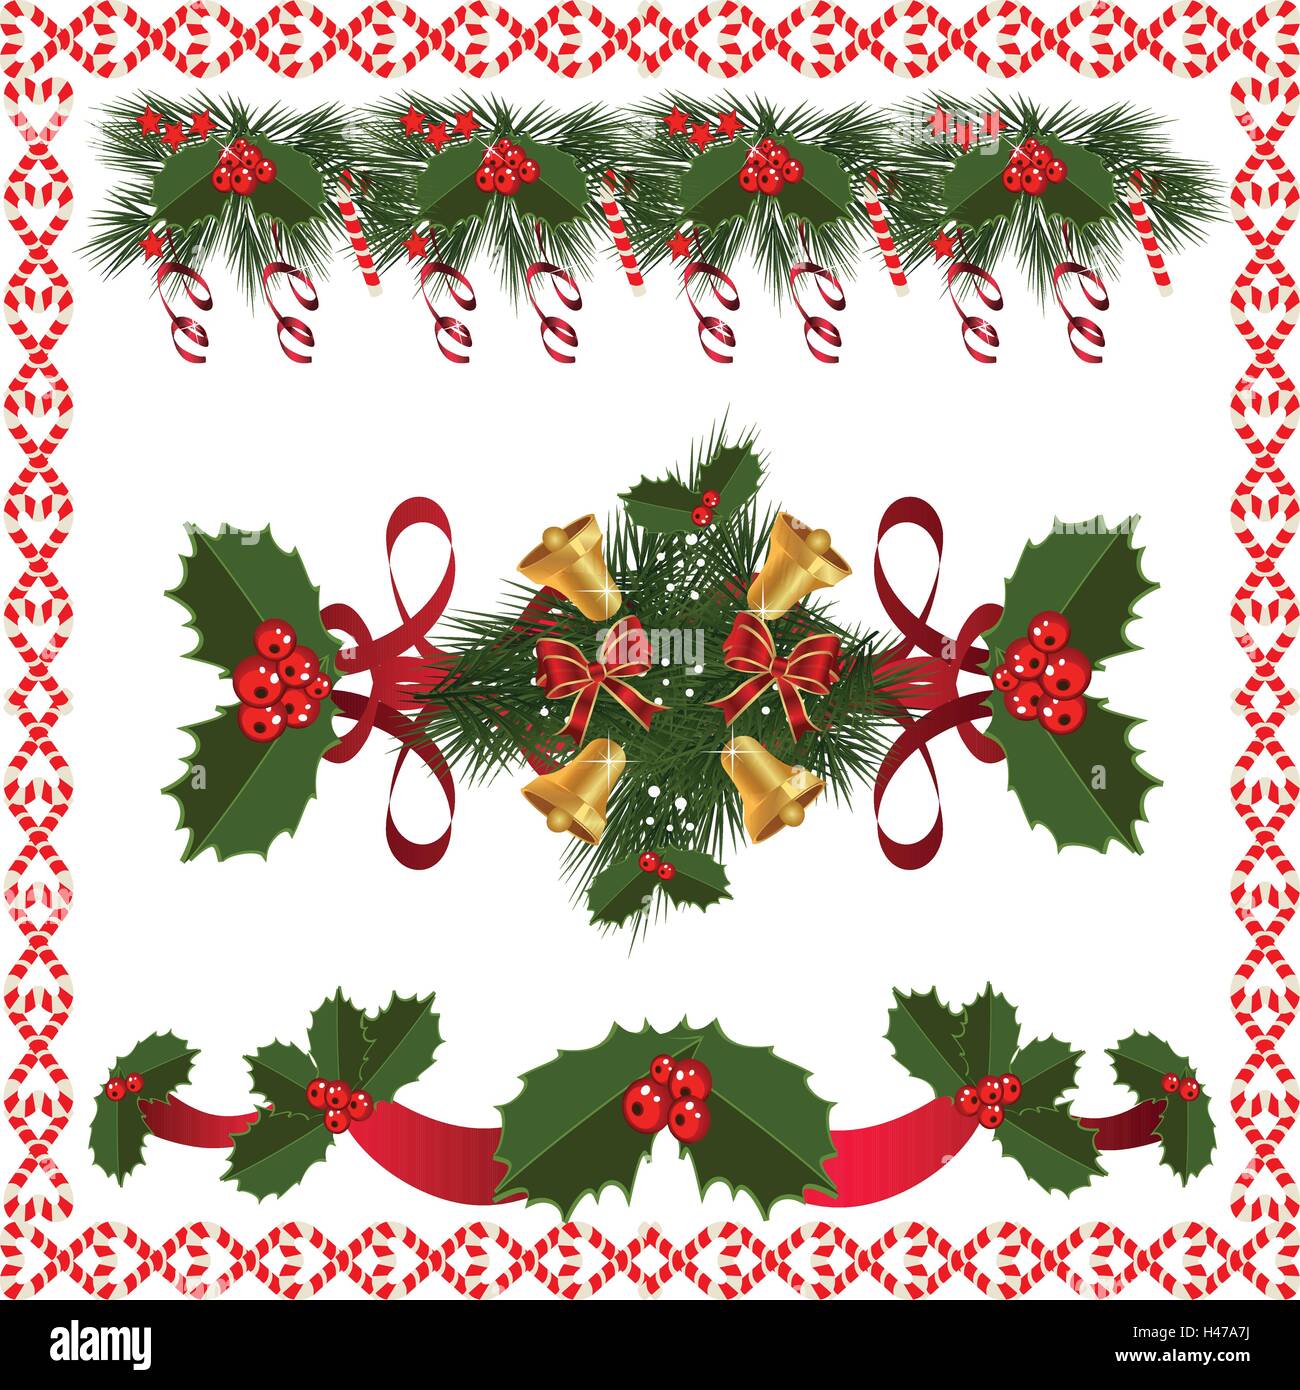 Eine traditionelle Weihnachtsgirlande gemacht mit roten Beeren und Band auf einem weißen Hintergrund. Festliche Hintergrund. Girlande-Bor Stock Vektor